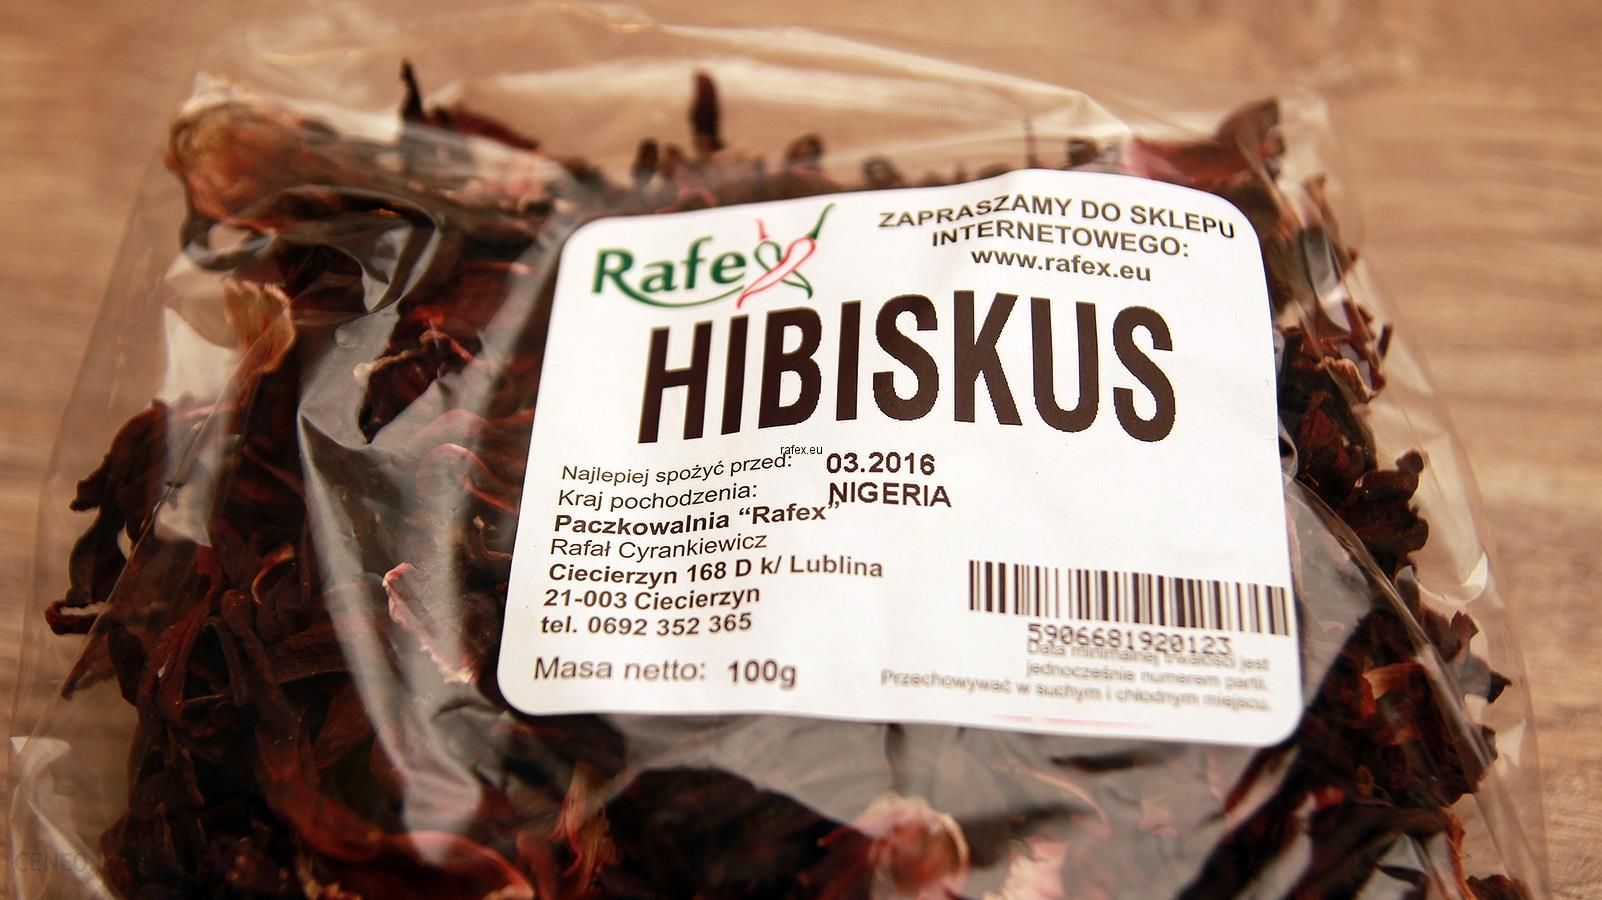 Rafex Hibiskus Kolorowy Biały + Czerwony (2 Gatunki ) 100 g